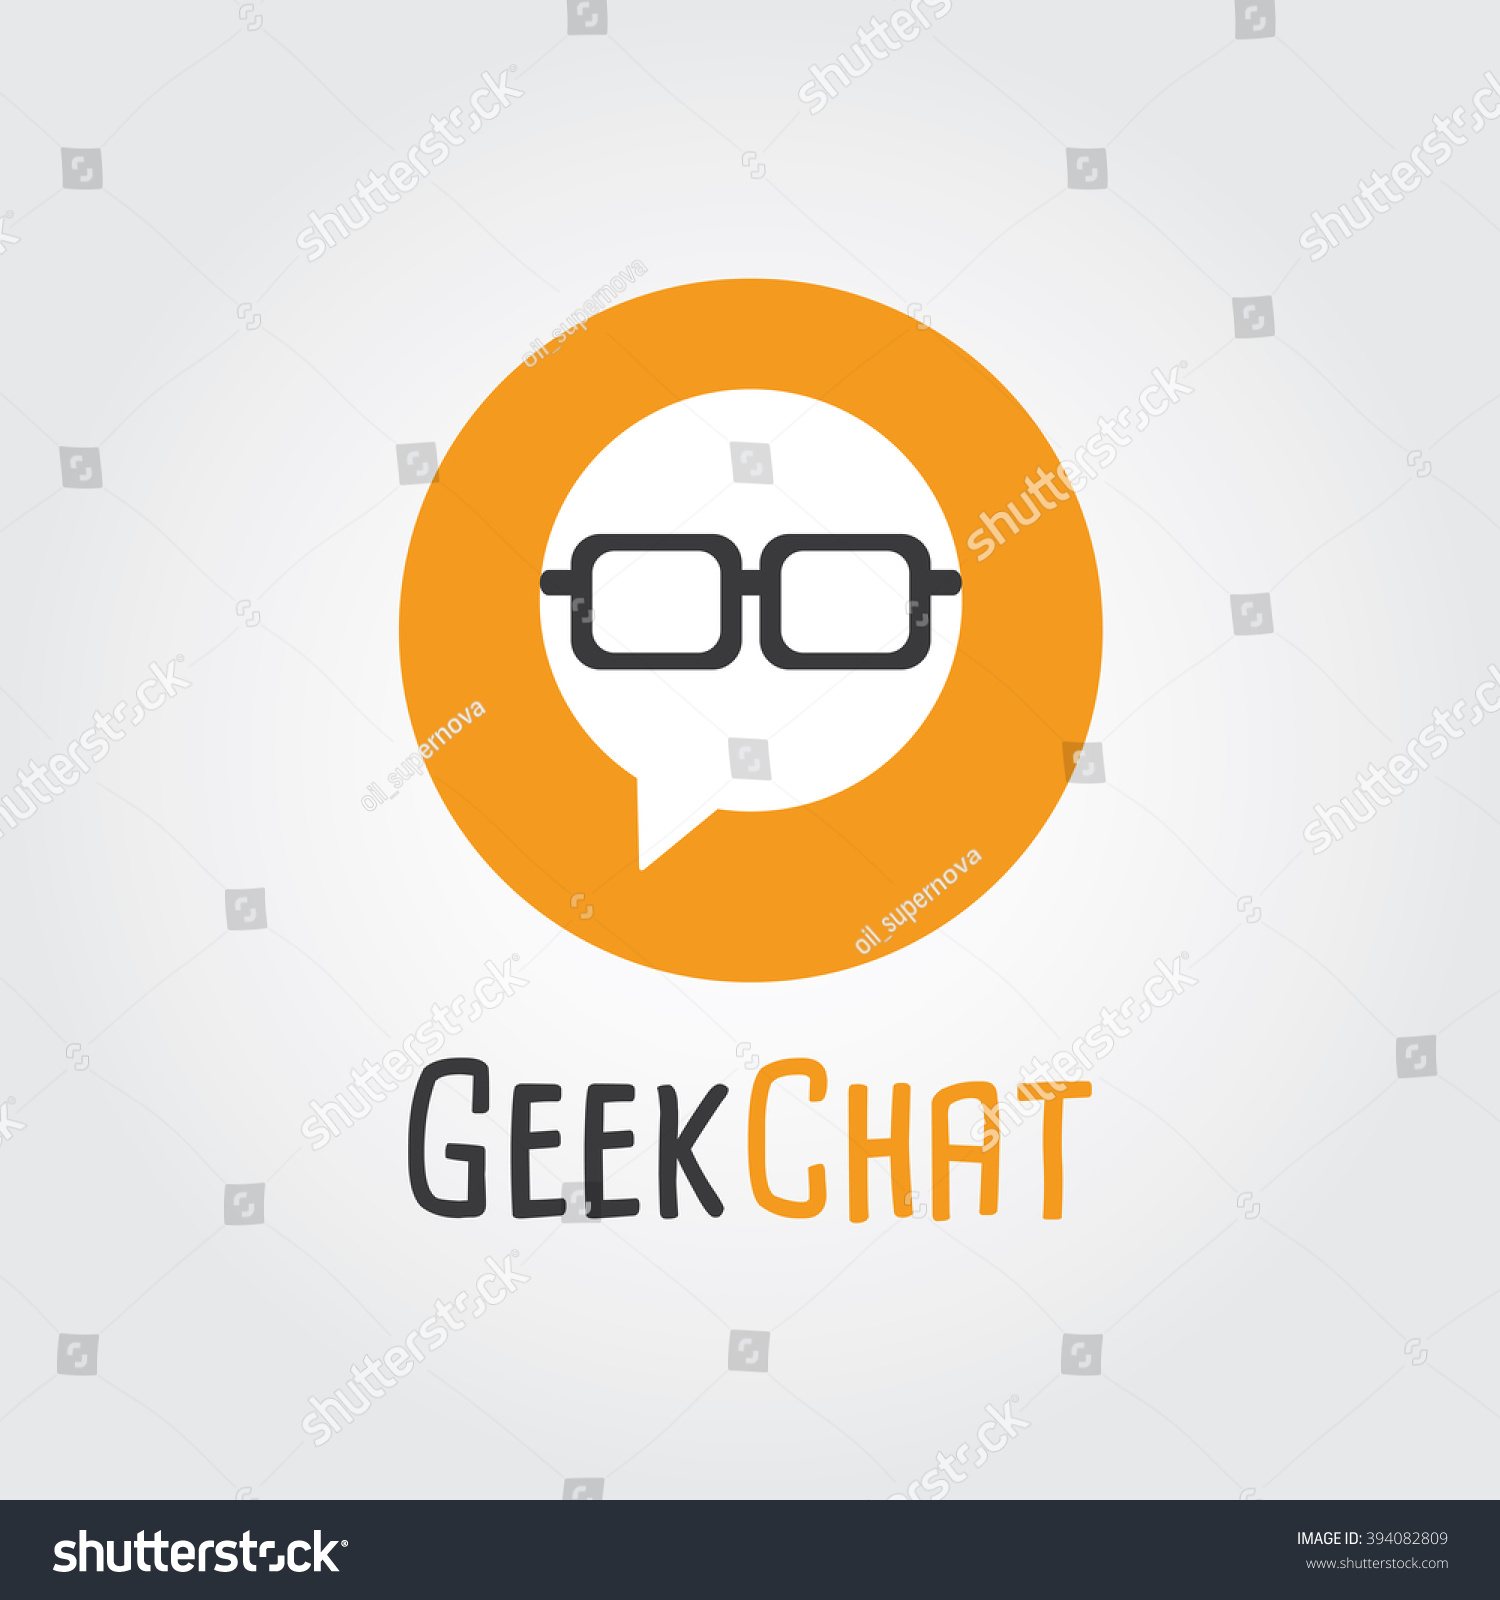 Gheek chat